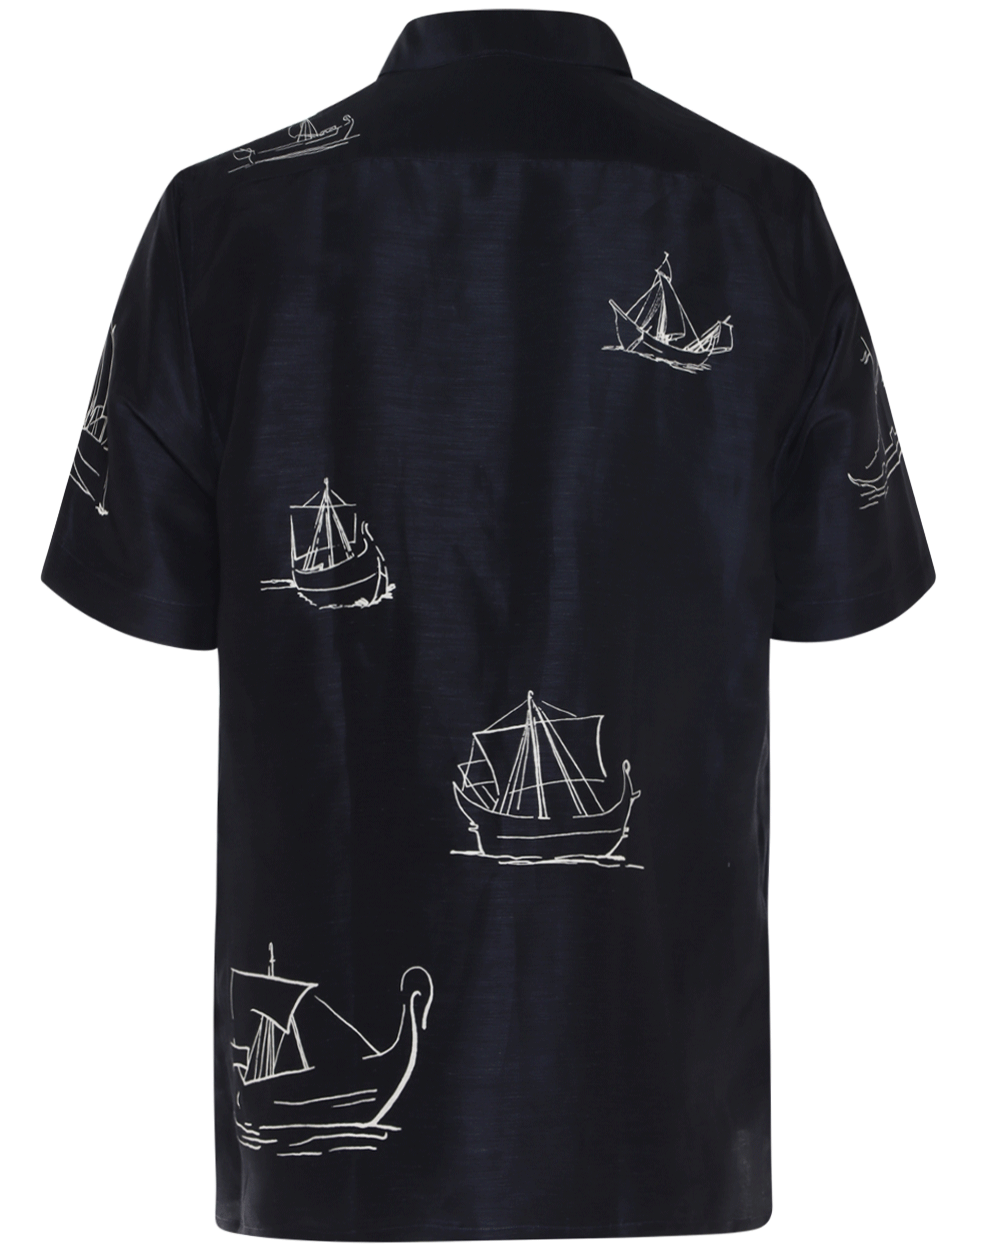 Navy and White Sailboat Print Short Sleeve Cuban Shirt